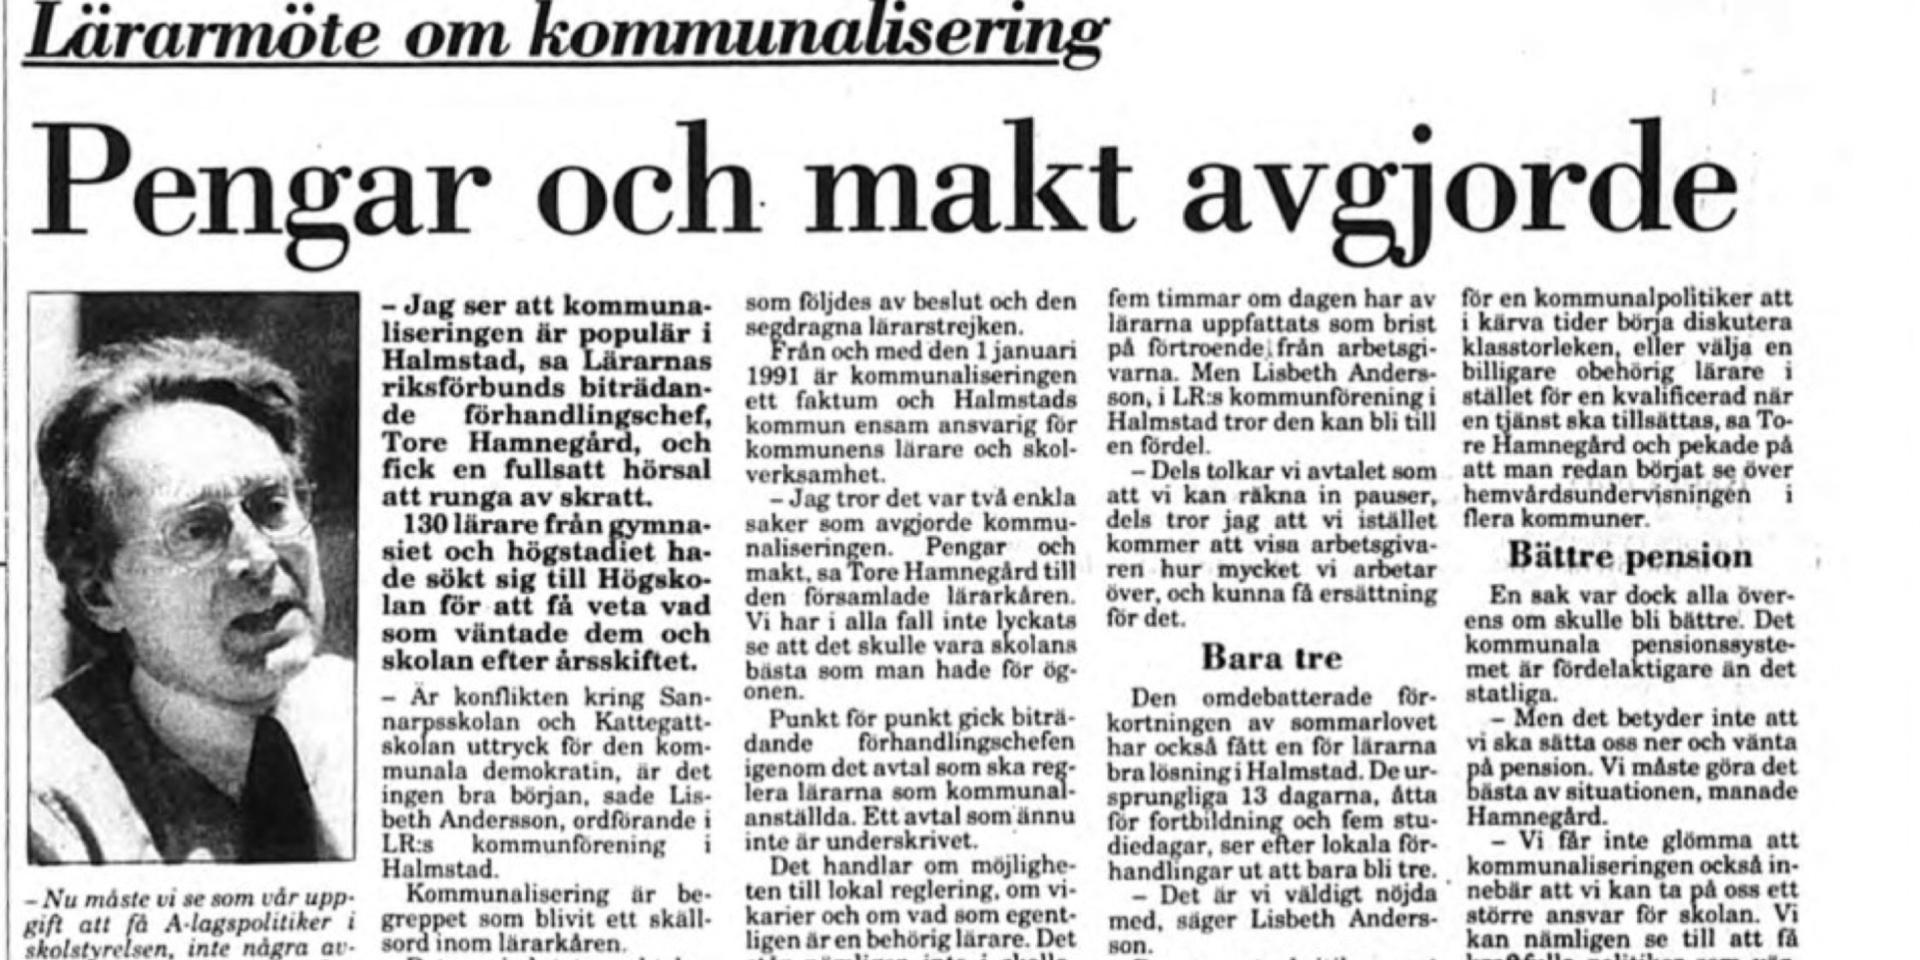 Inför övergången till en kommunal skola den 1 januari 1991 fick Halmstads lärare lyssna på Tore Hamnegård, biträdande förhandlingschef på Lärarnas Riksförbund, som informerade om det nya avtalet och vad kommunaliseringen skulle innebära.